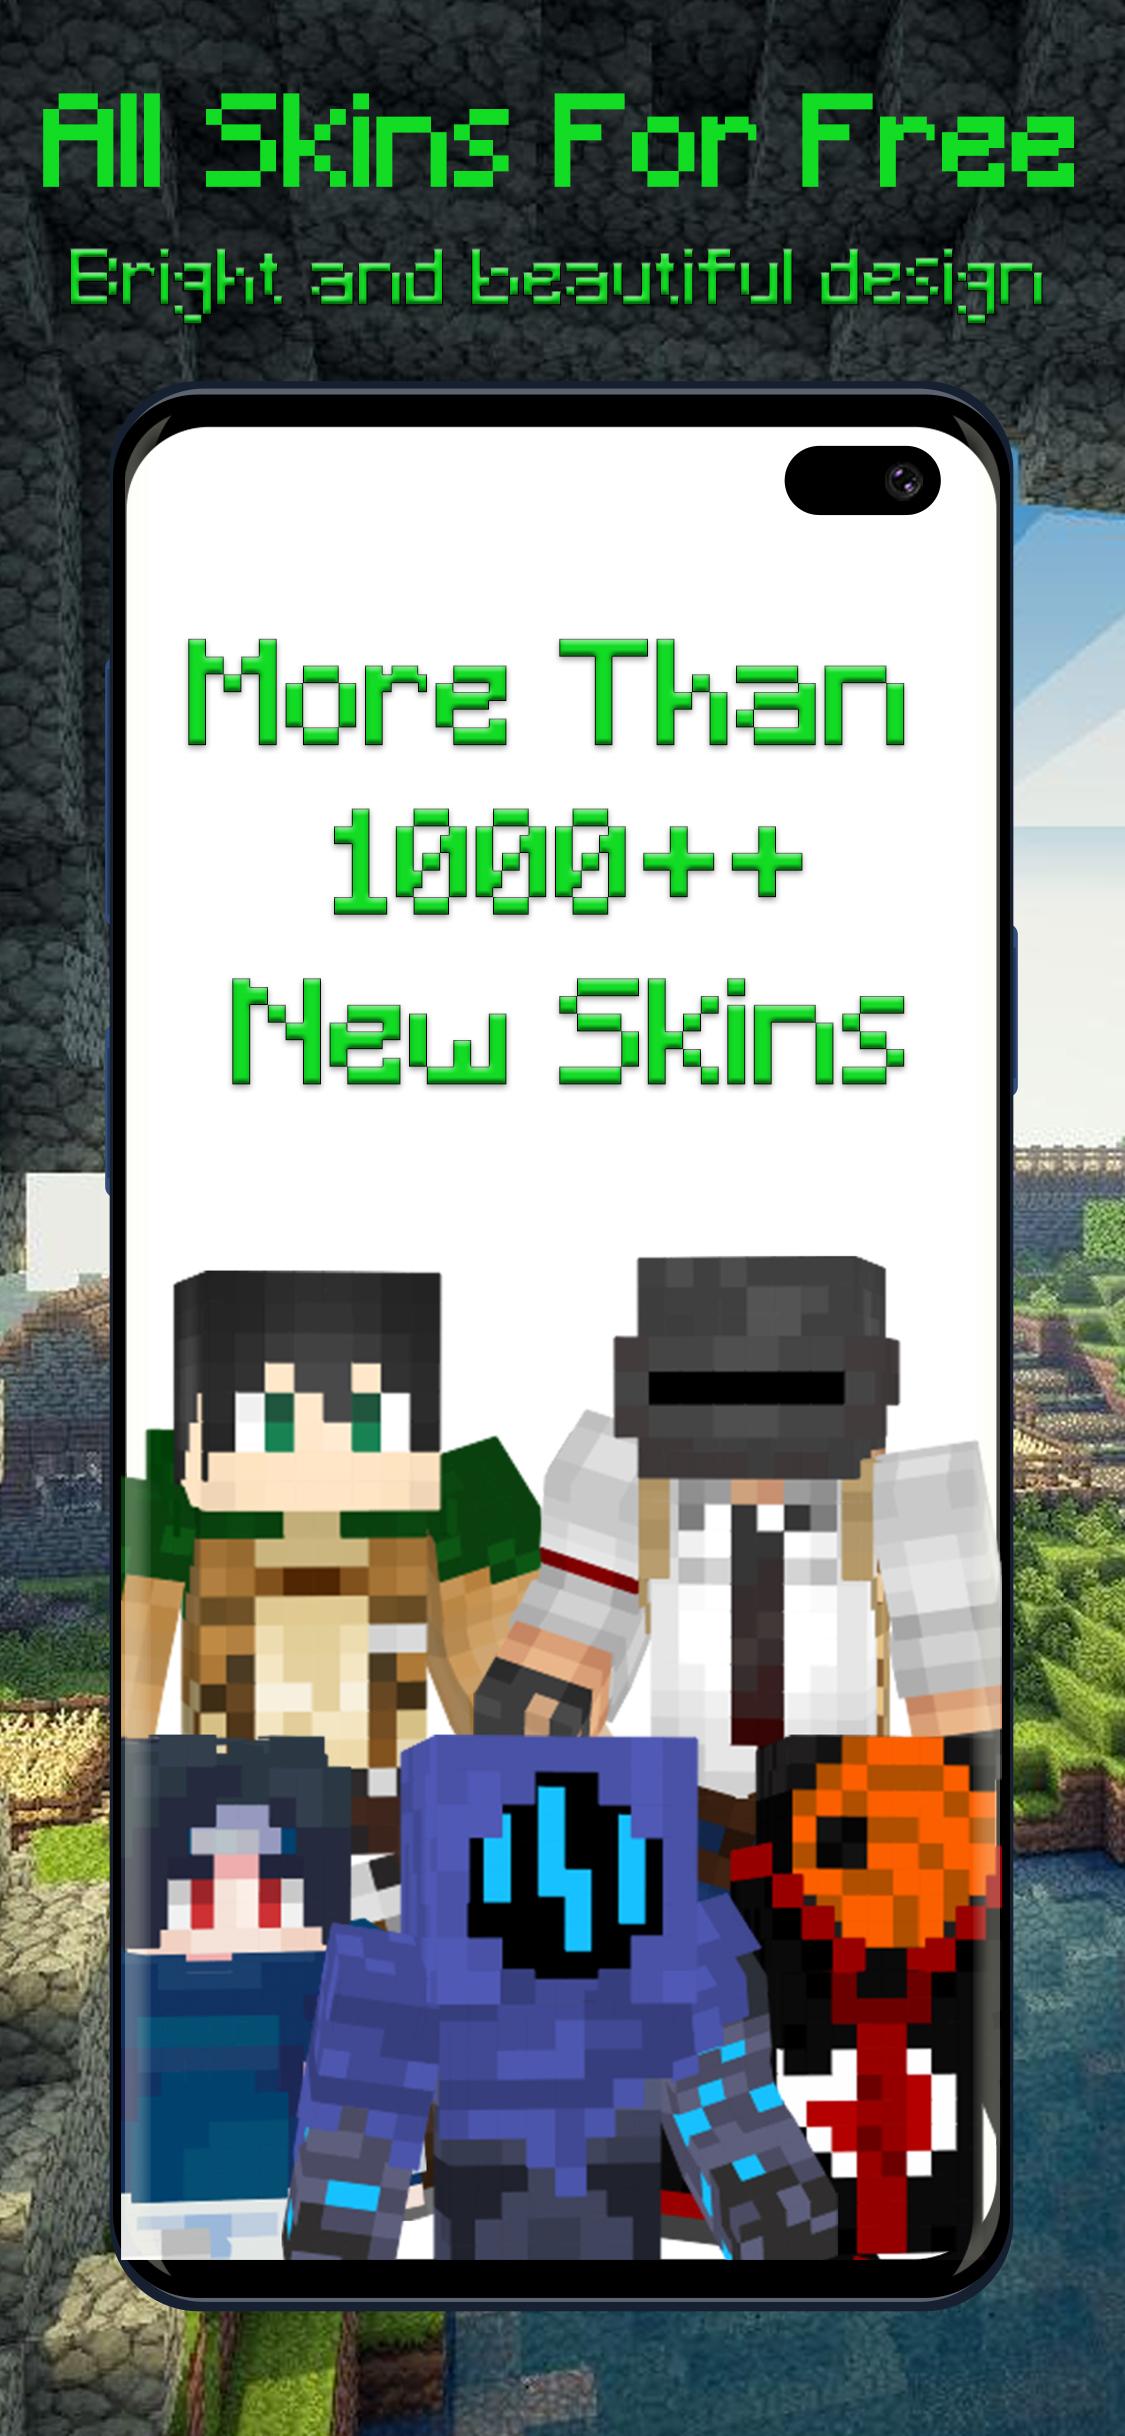 slender roblox  Minecraft Skins